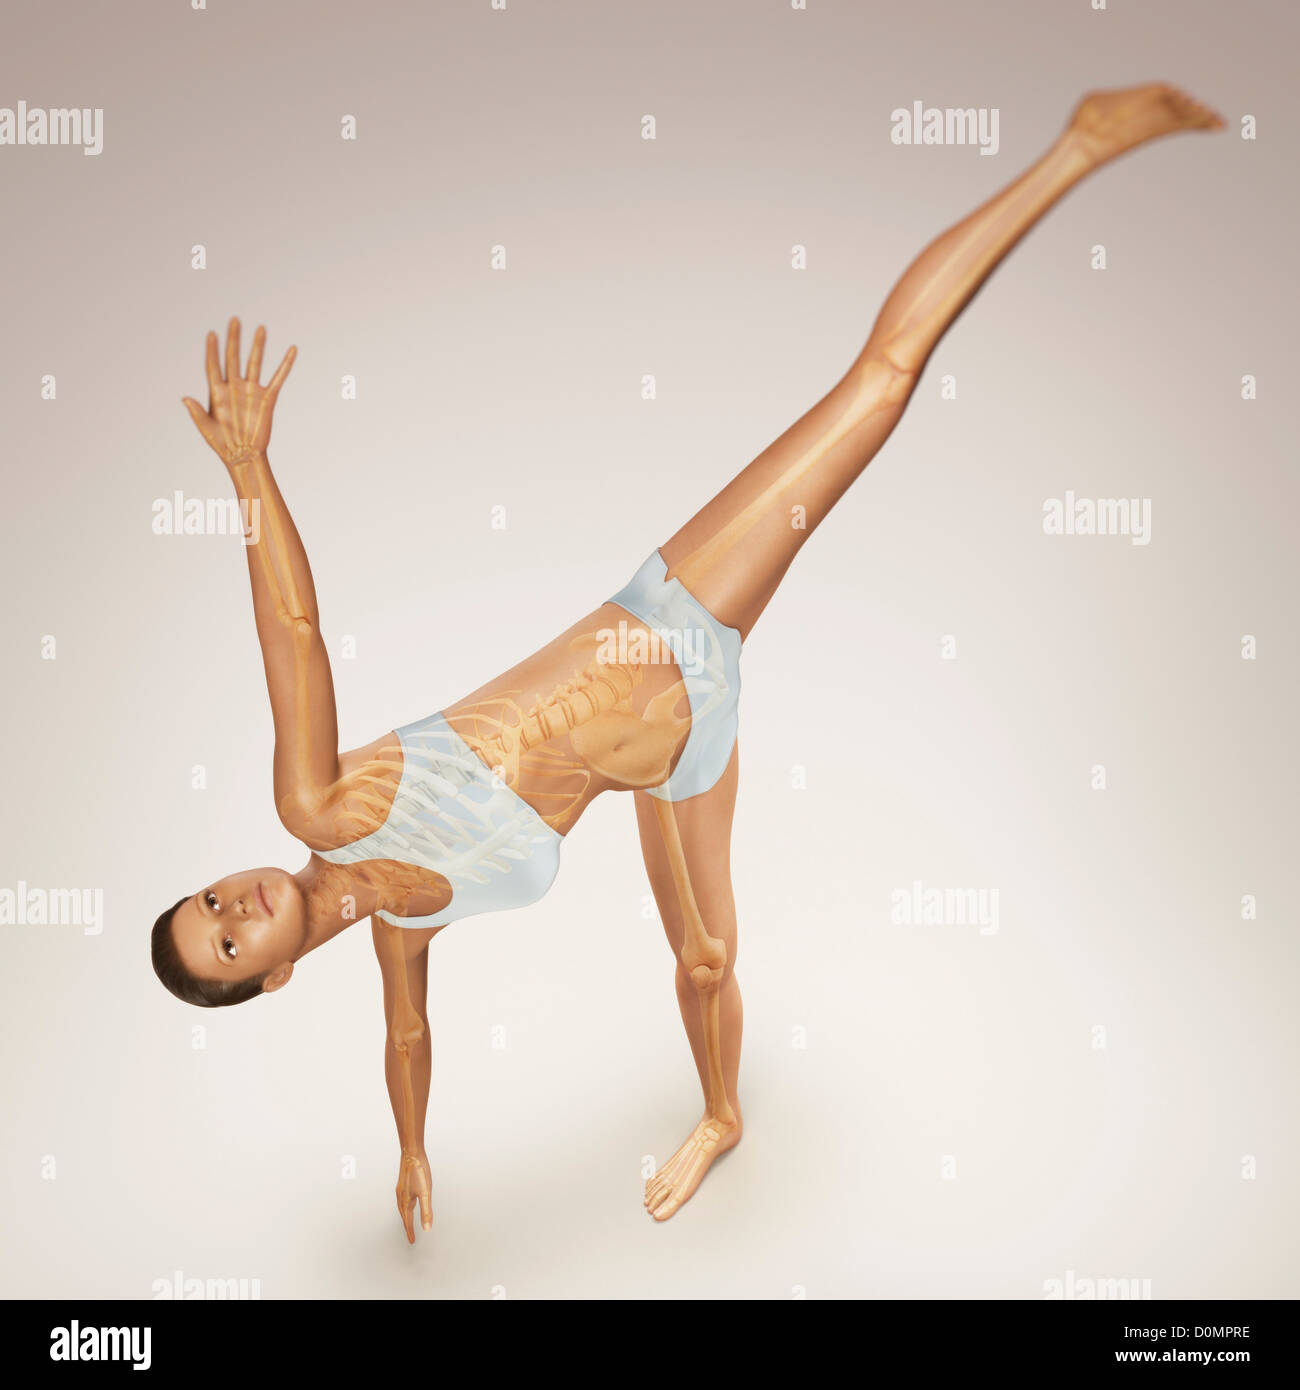 Skelett über einen weiblichen Körper in Halbmond-Pose zeigt die Skelette Ausrichtung von diesem bestimmten Yogastellung geschichtet. Stockfoto